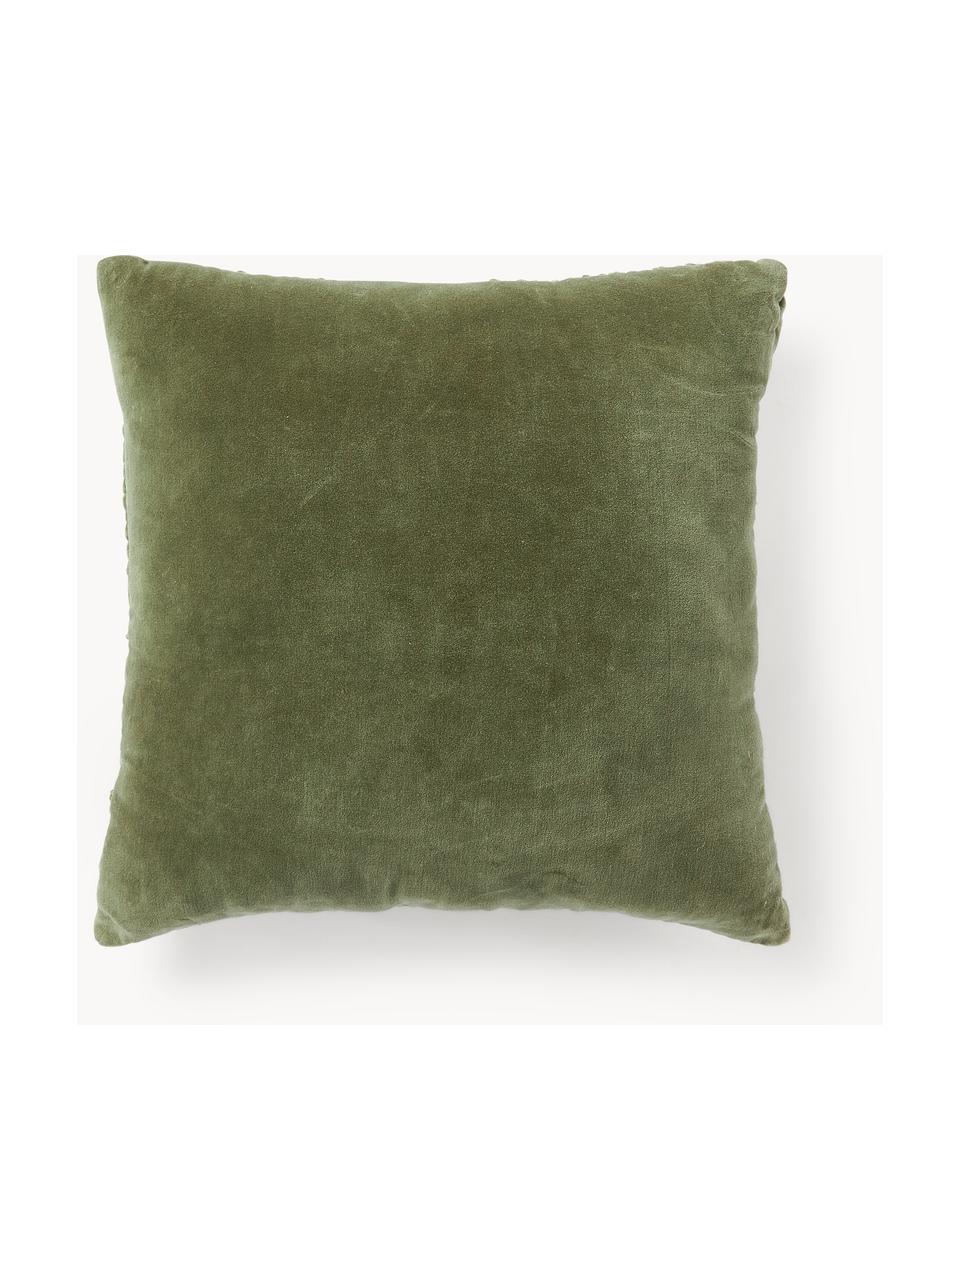 Poduszka z aksamitu Vada, Oliwkowy zielony, S 50 x L 50 cm